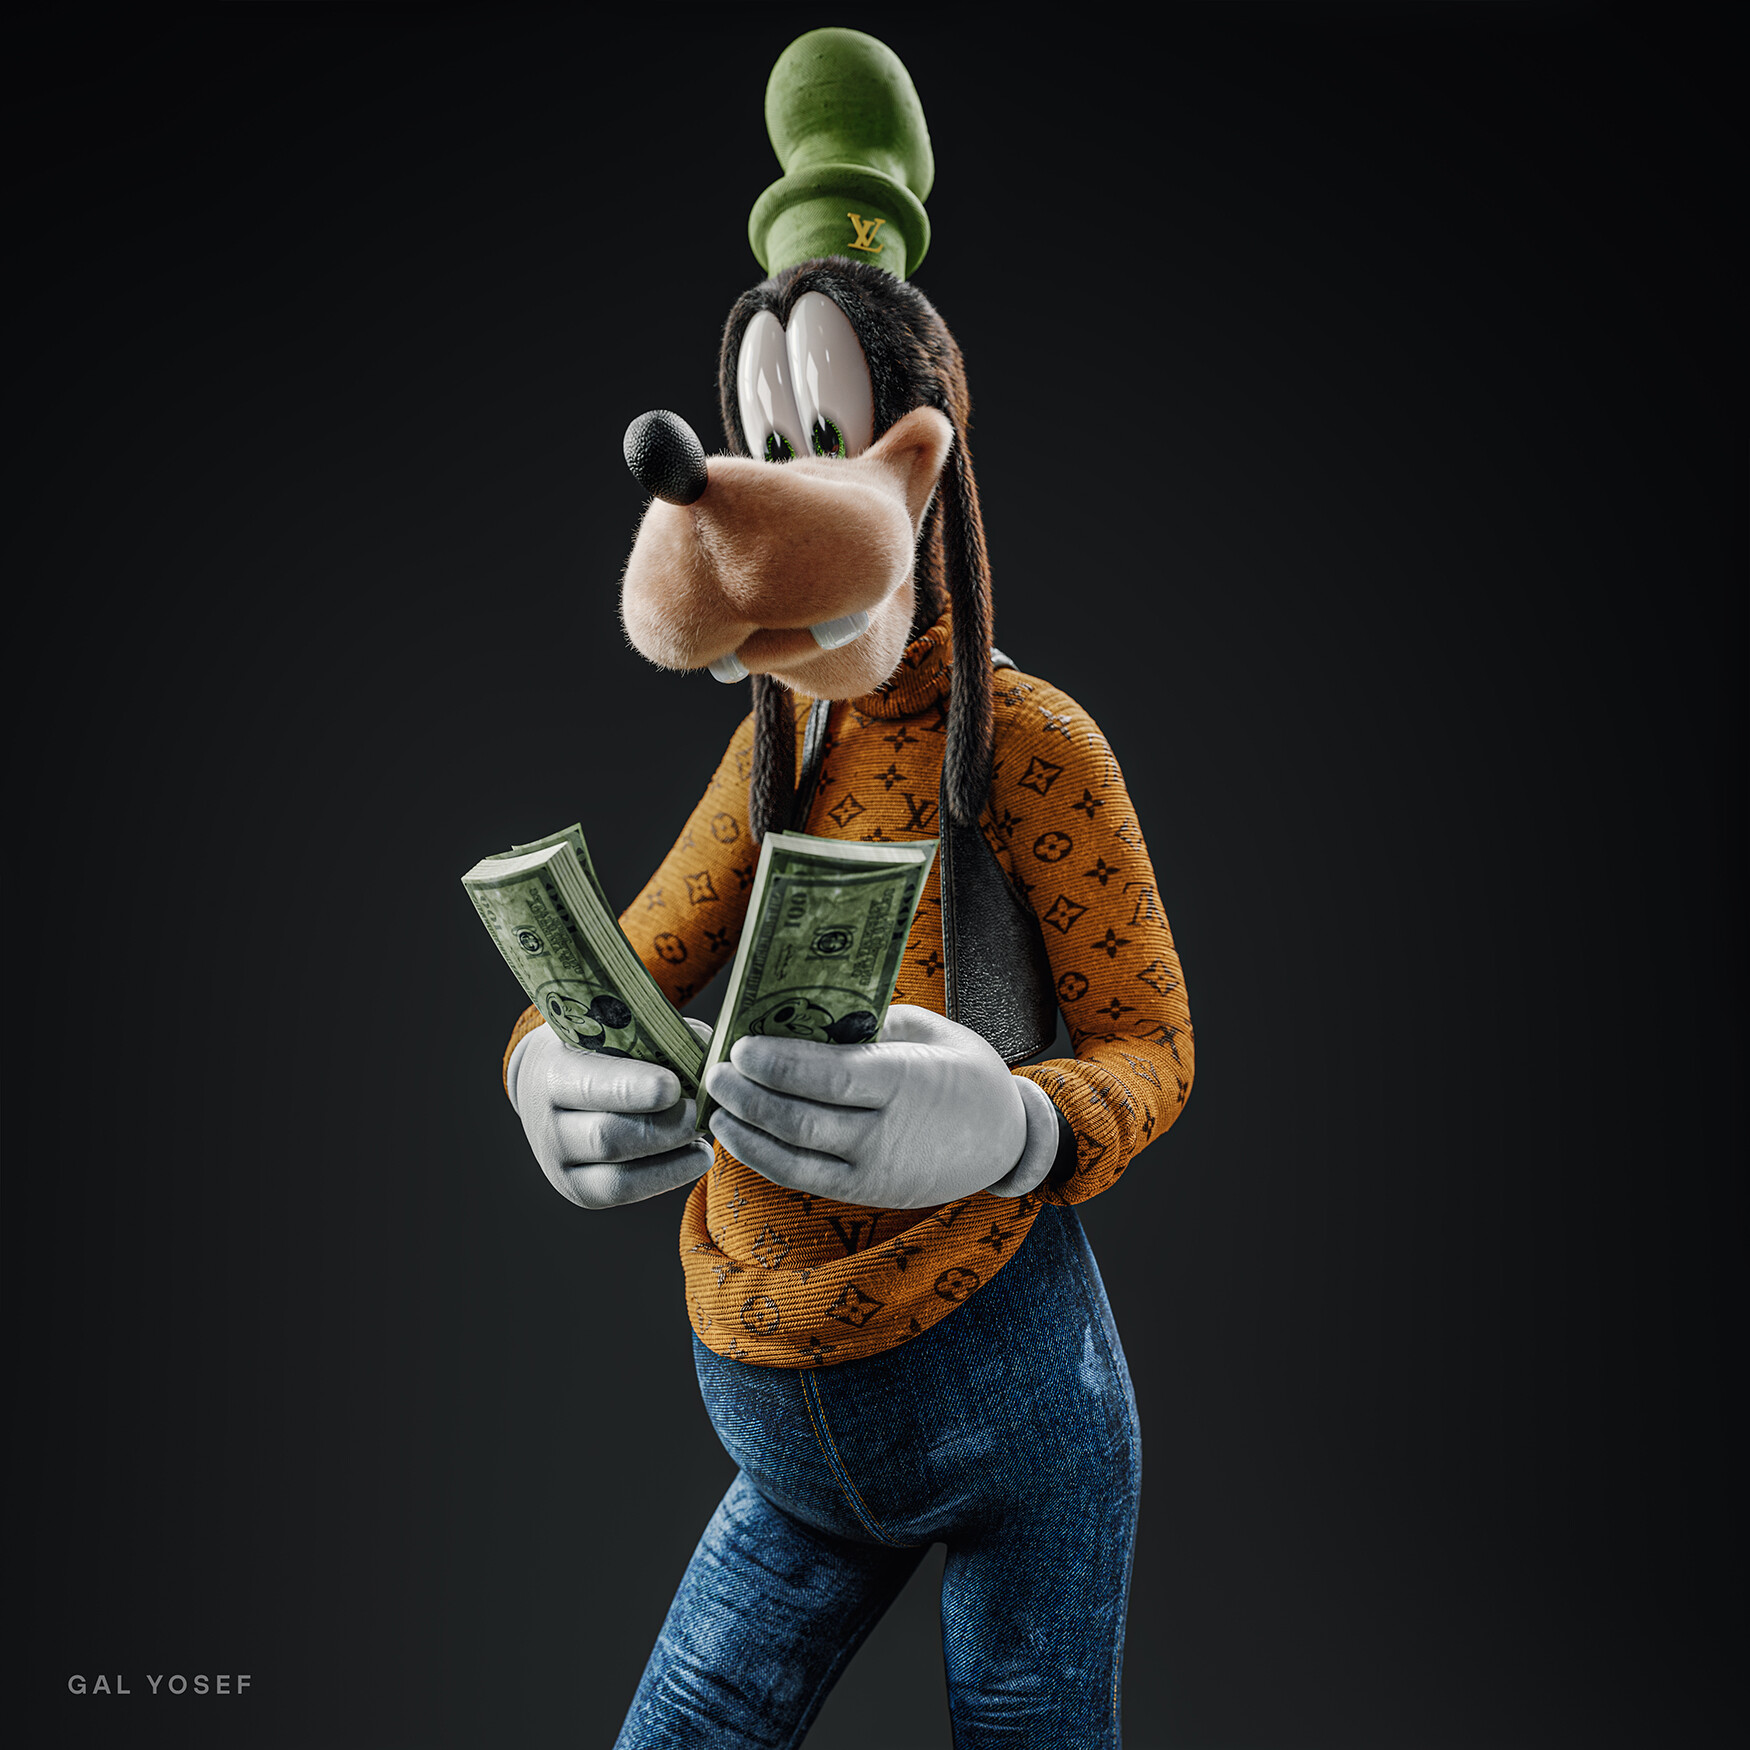 ArtStation - Louis Vuitton Mickey Mouse